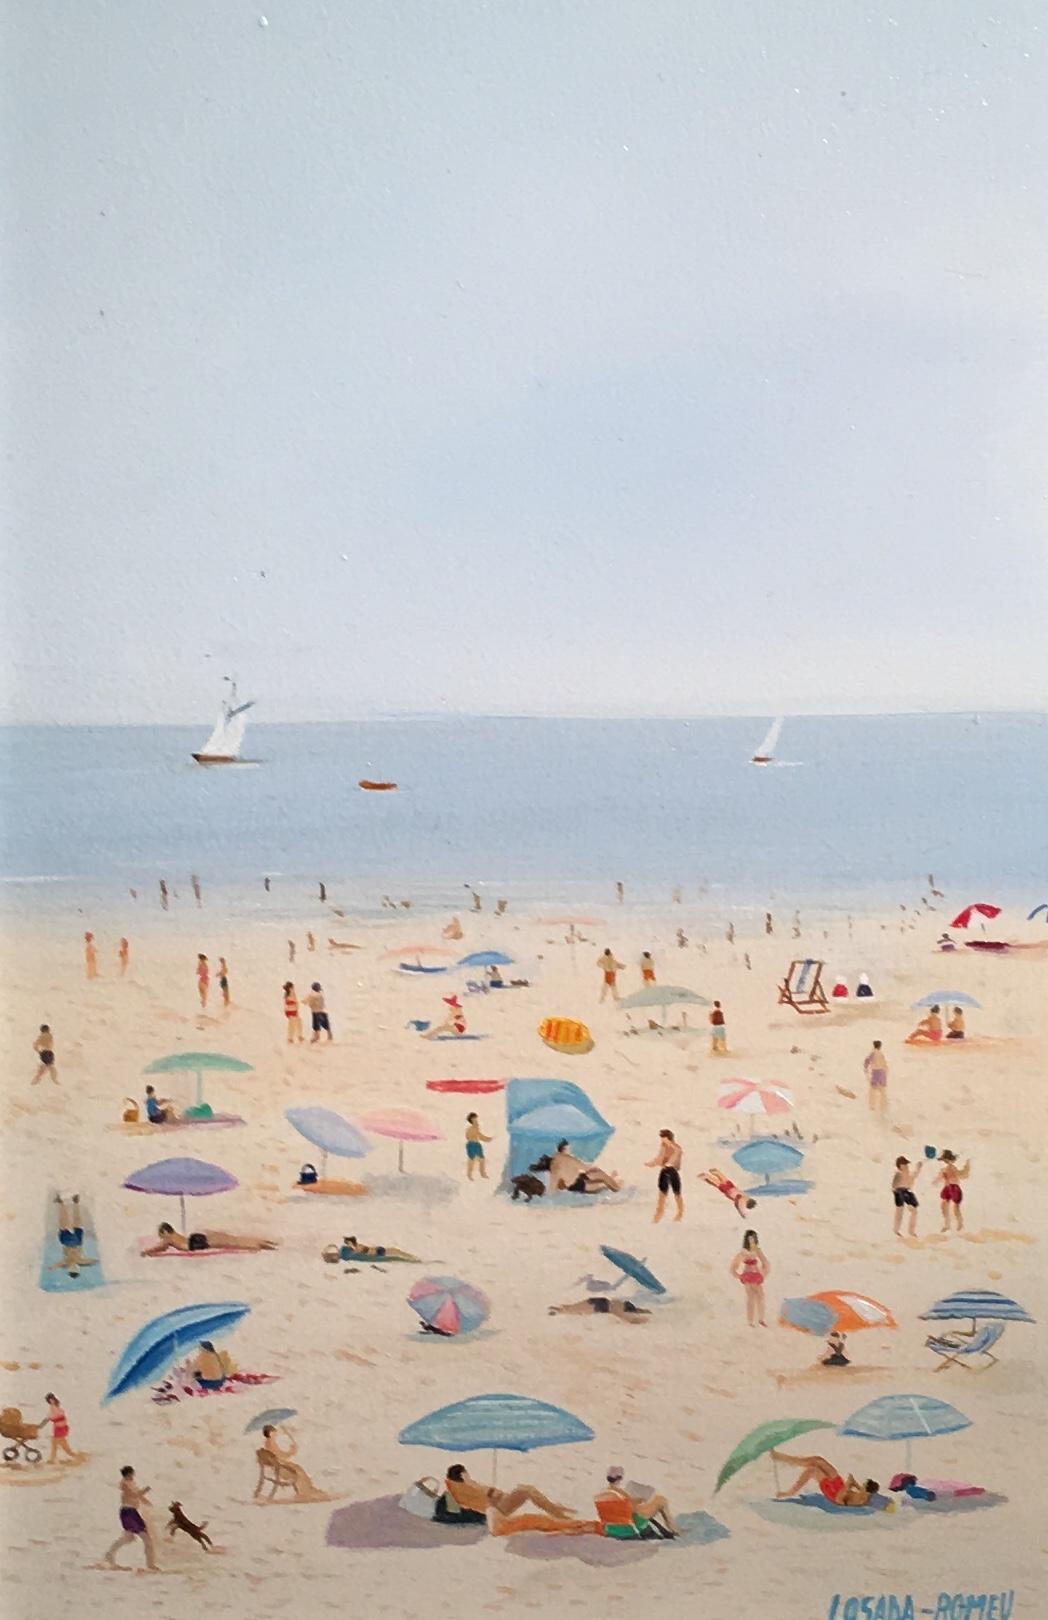 Figurative Painting Losada Romeu  - 'Fun on the Beach' Contemporary Scène de plage colorée avec des personnages, la mer et l'eau